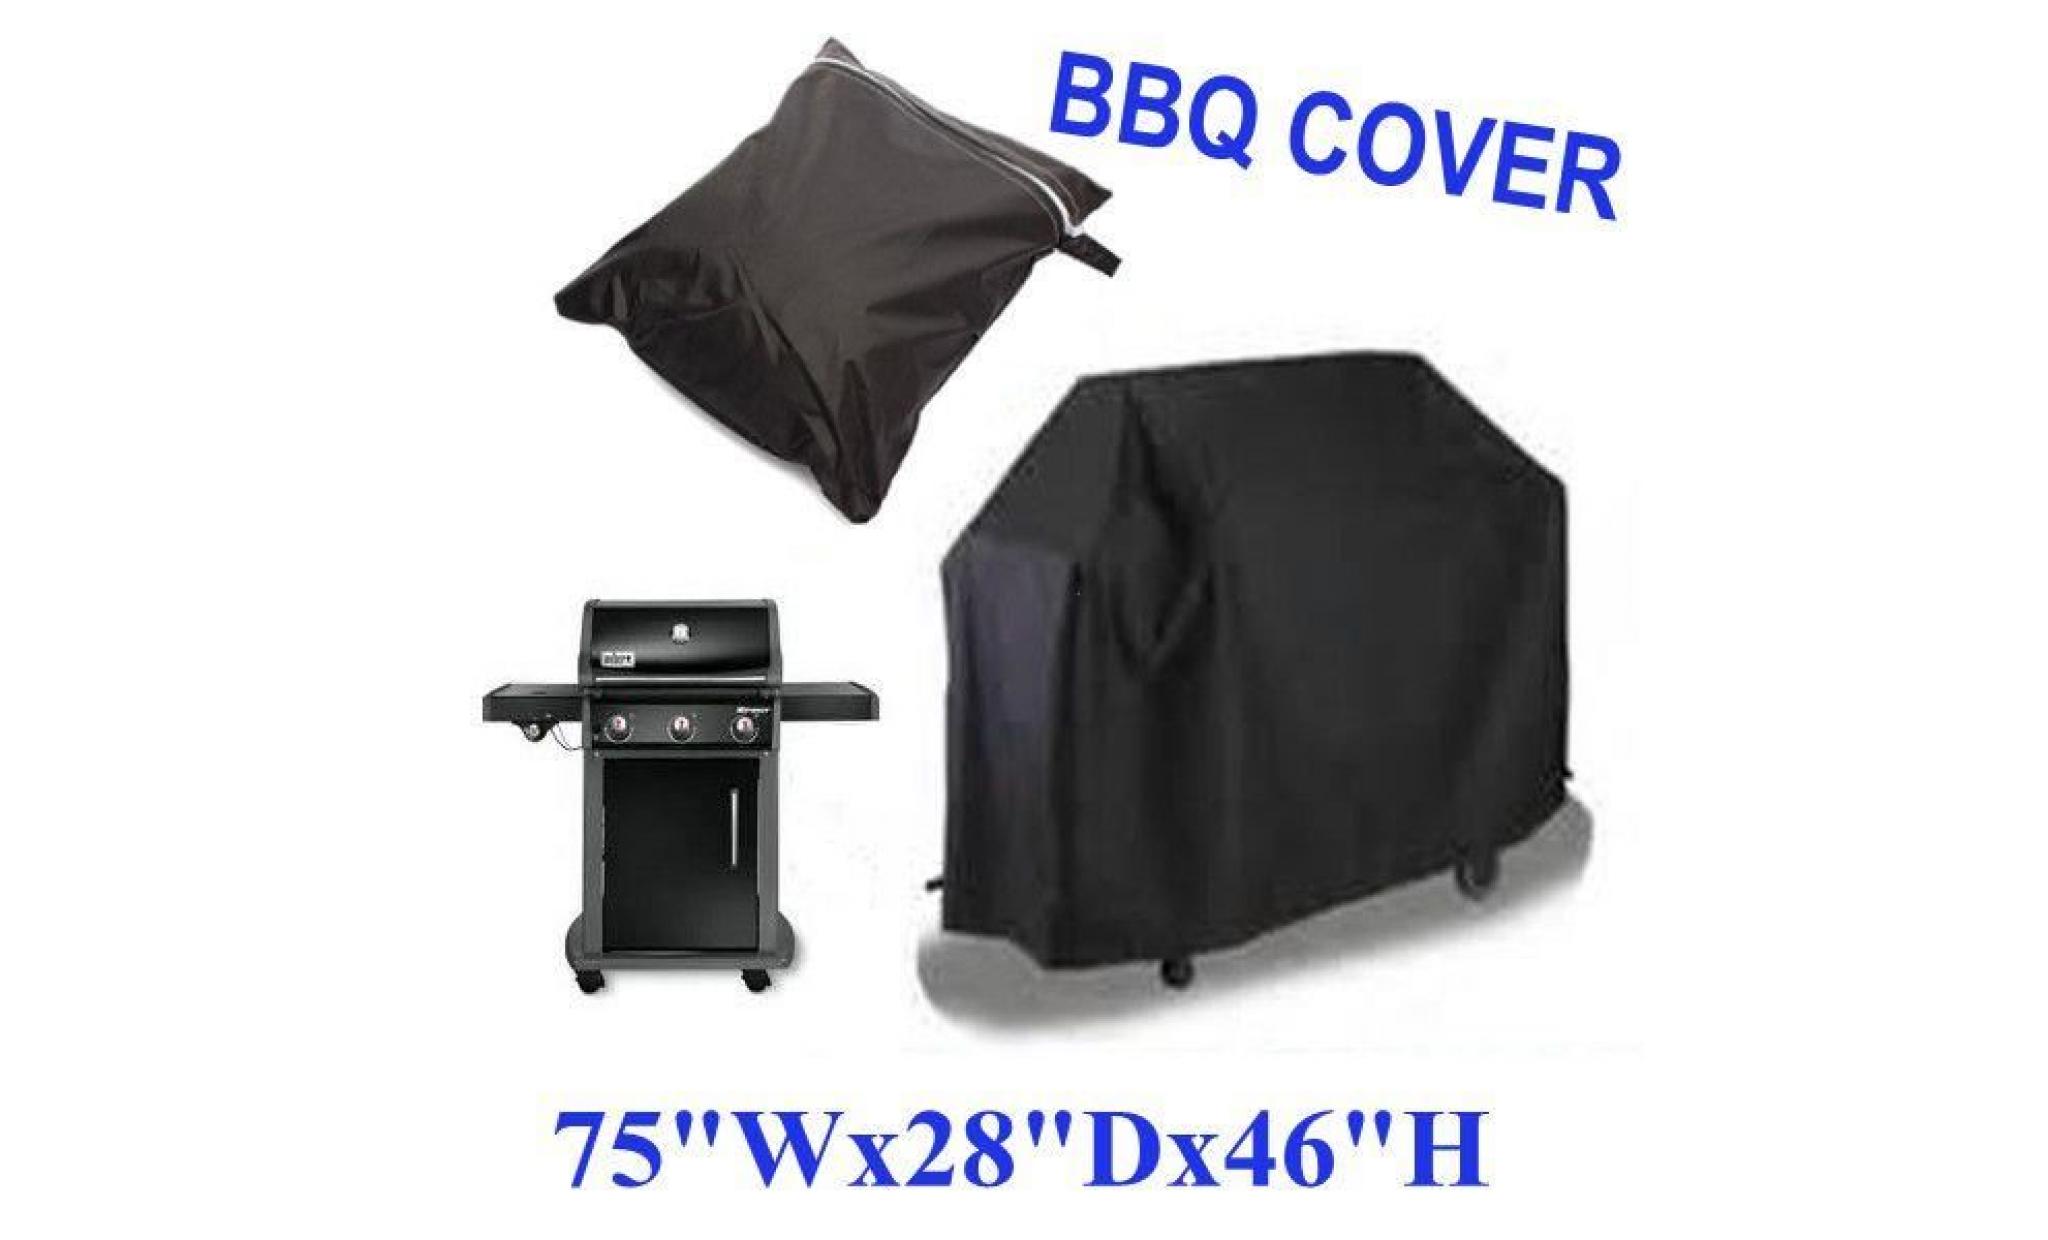 neufu housse de protection pour bbq cover grill extérieur anti pluie etanche 190x71x117cmrh1841